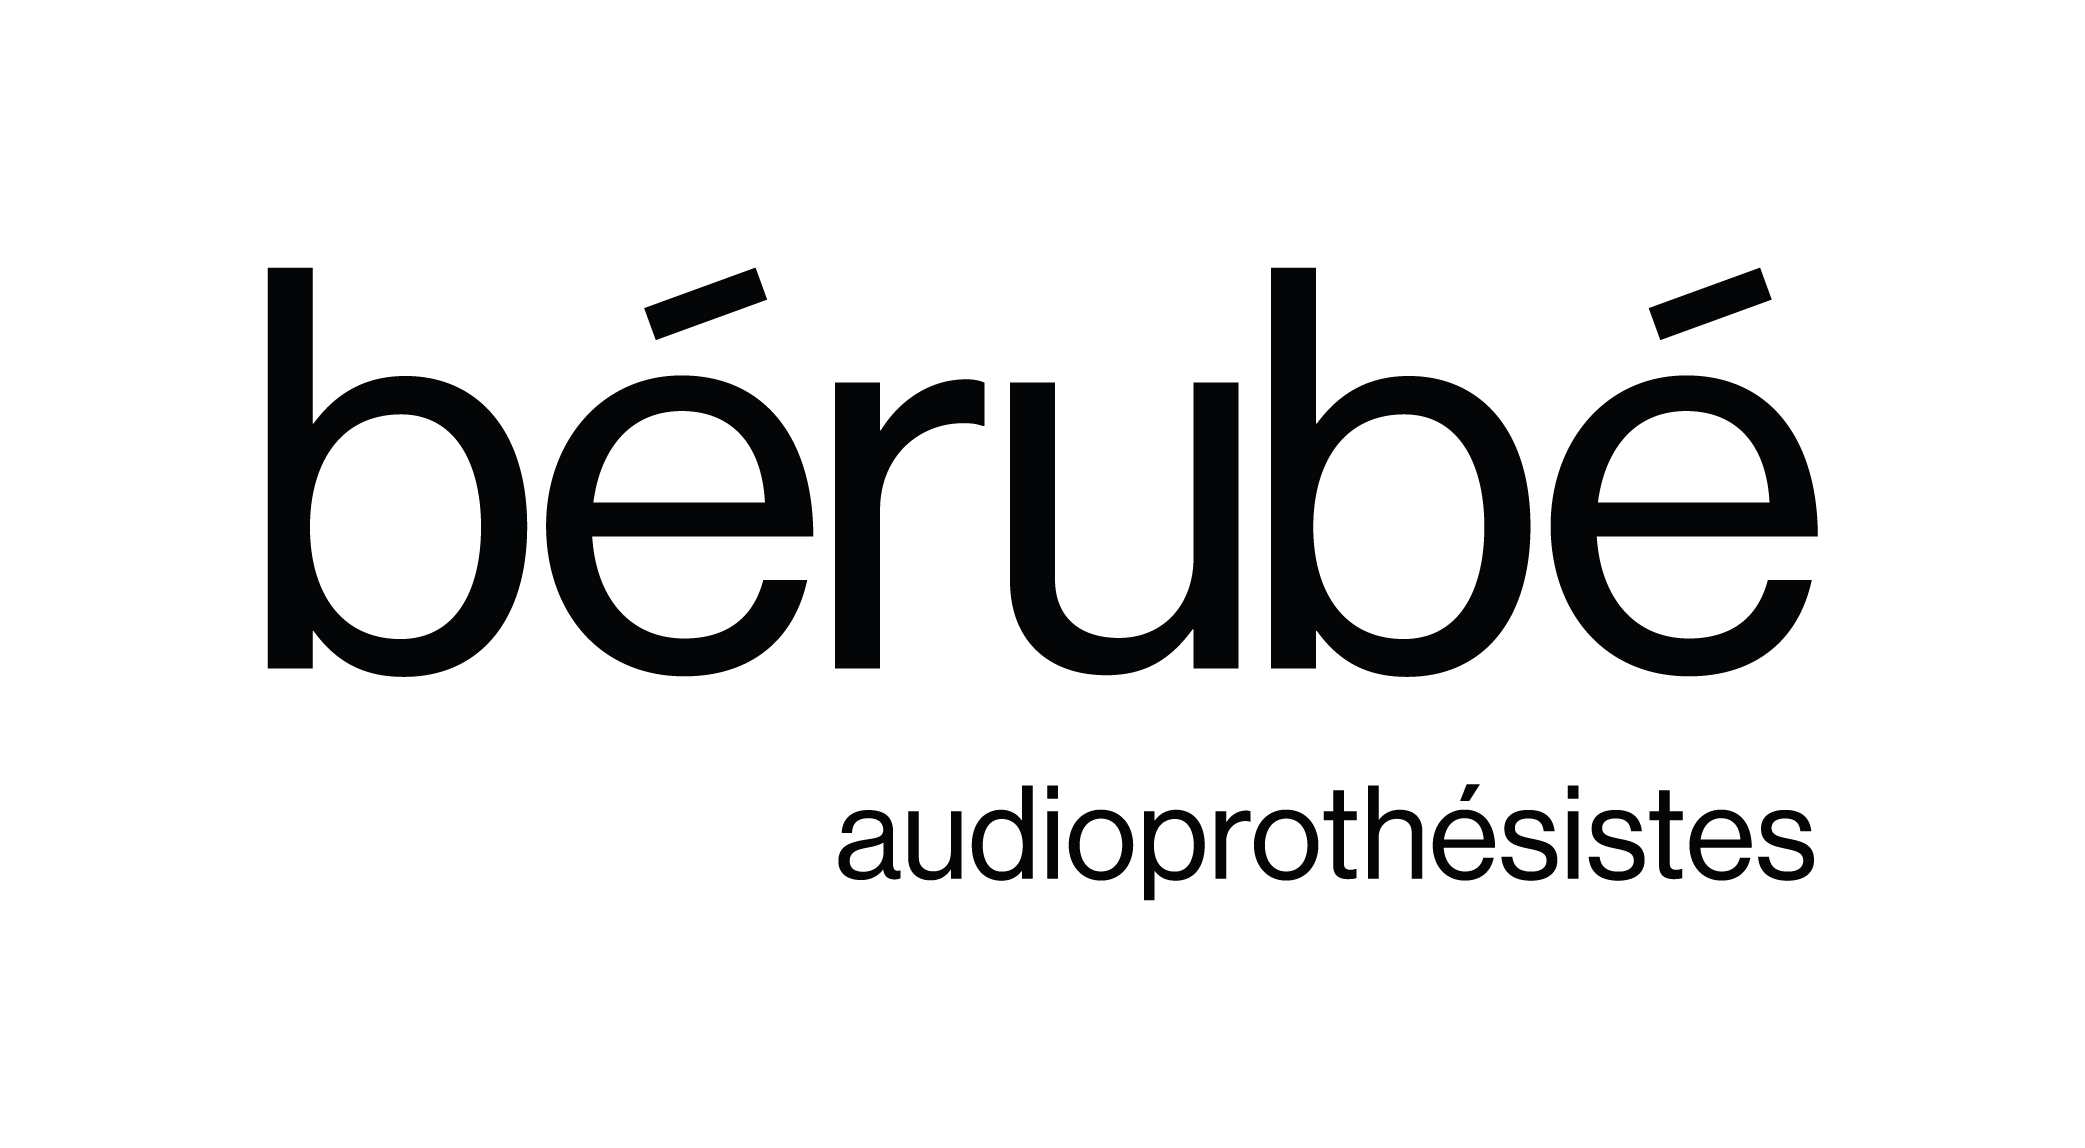 Bérubé audioprothésistes